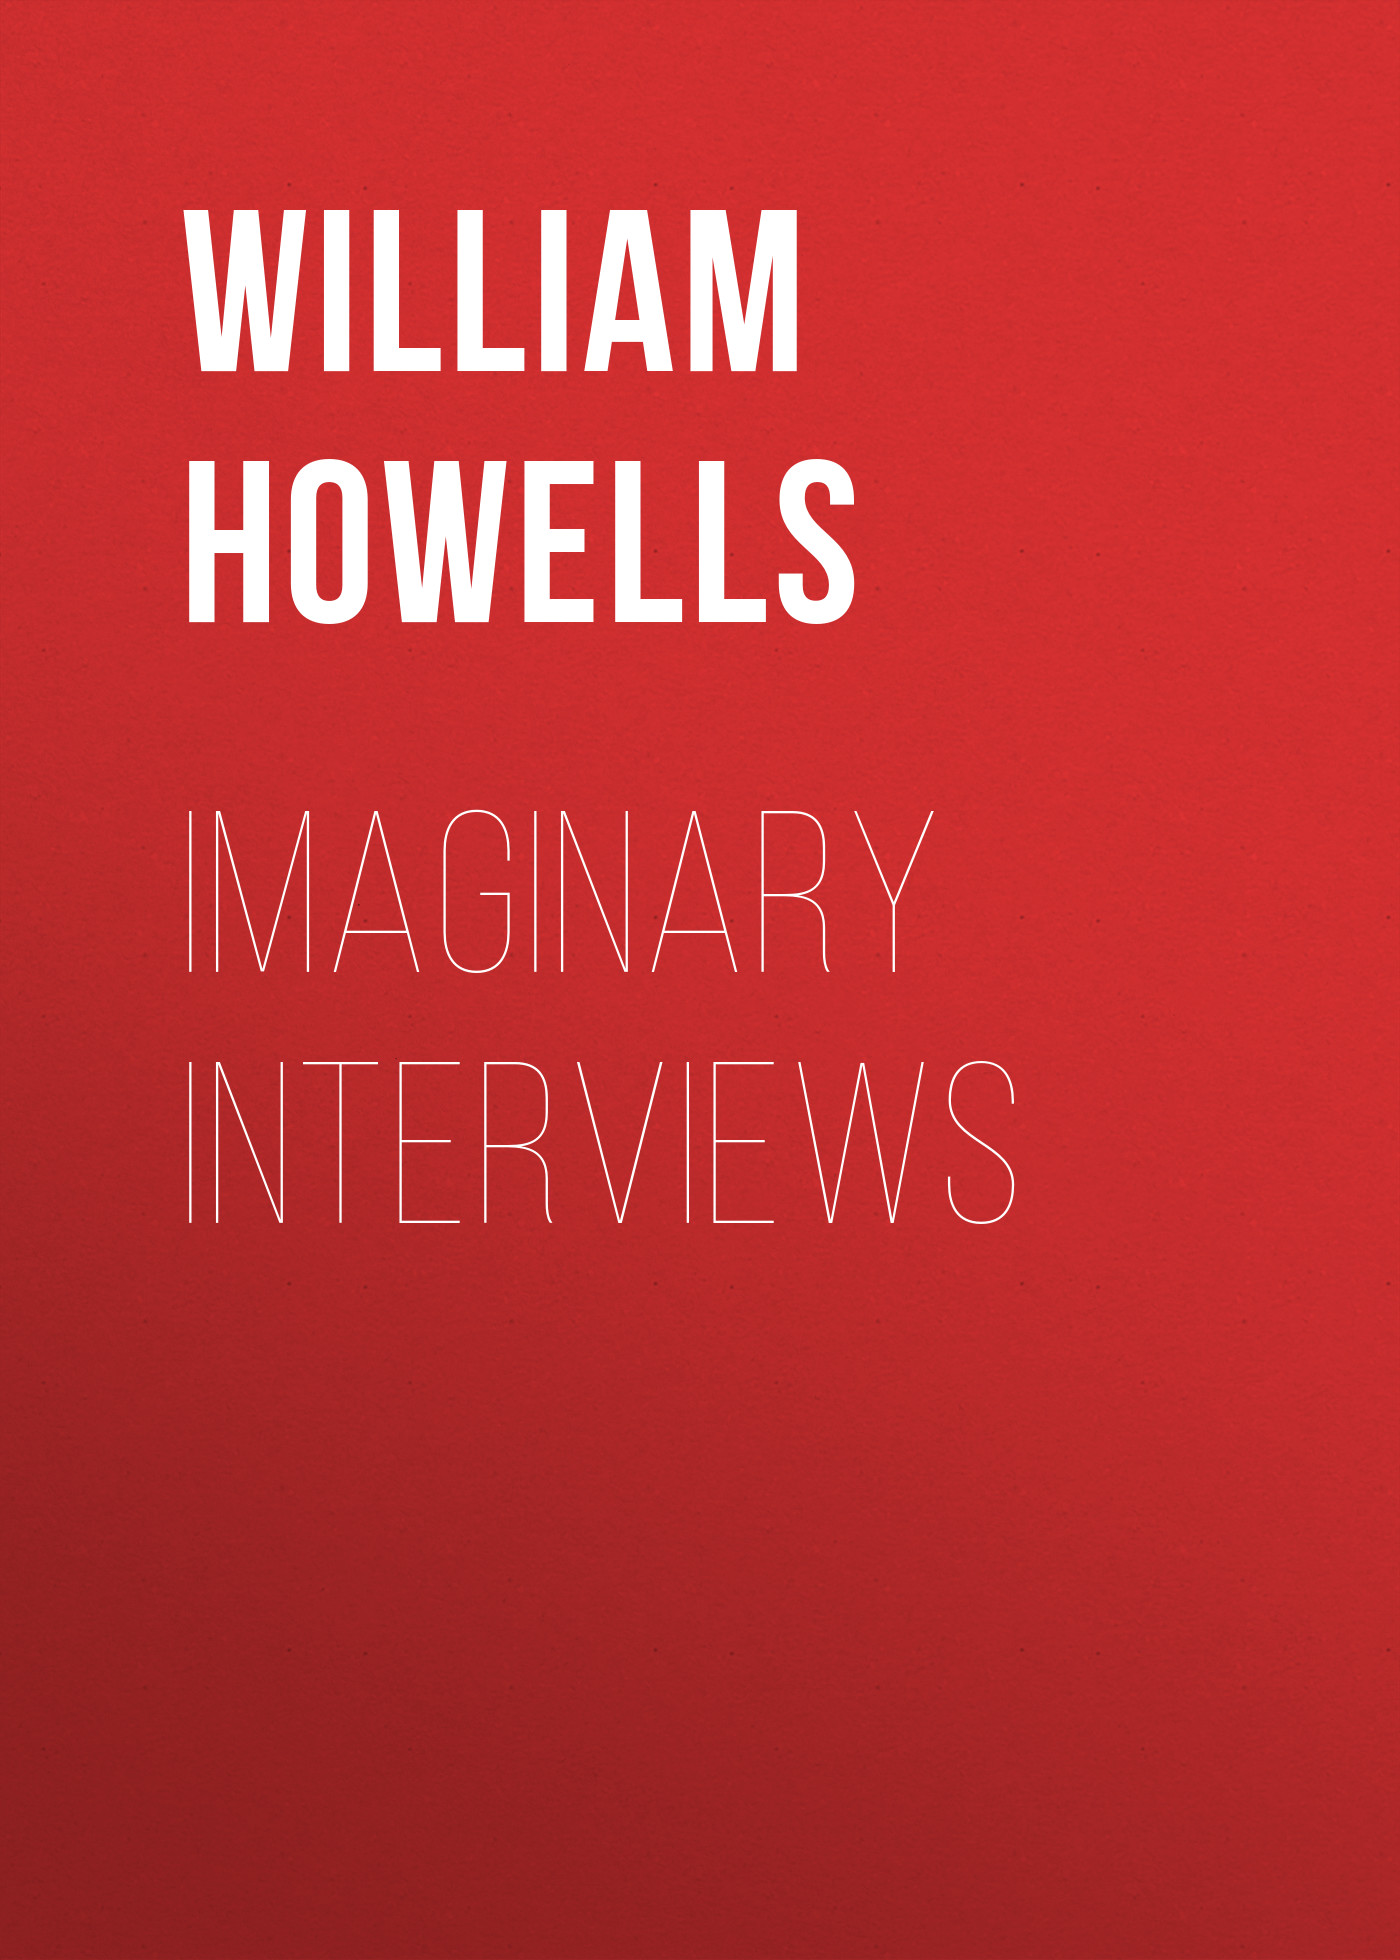 Книга Imaginary Interviews из серии , созданная William Howells, может относится к жанру Зарубежная классика. Стоимость электронной книги Imaginary Interviews с идентификатором 23160395 составляет 5.99 руб.